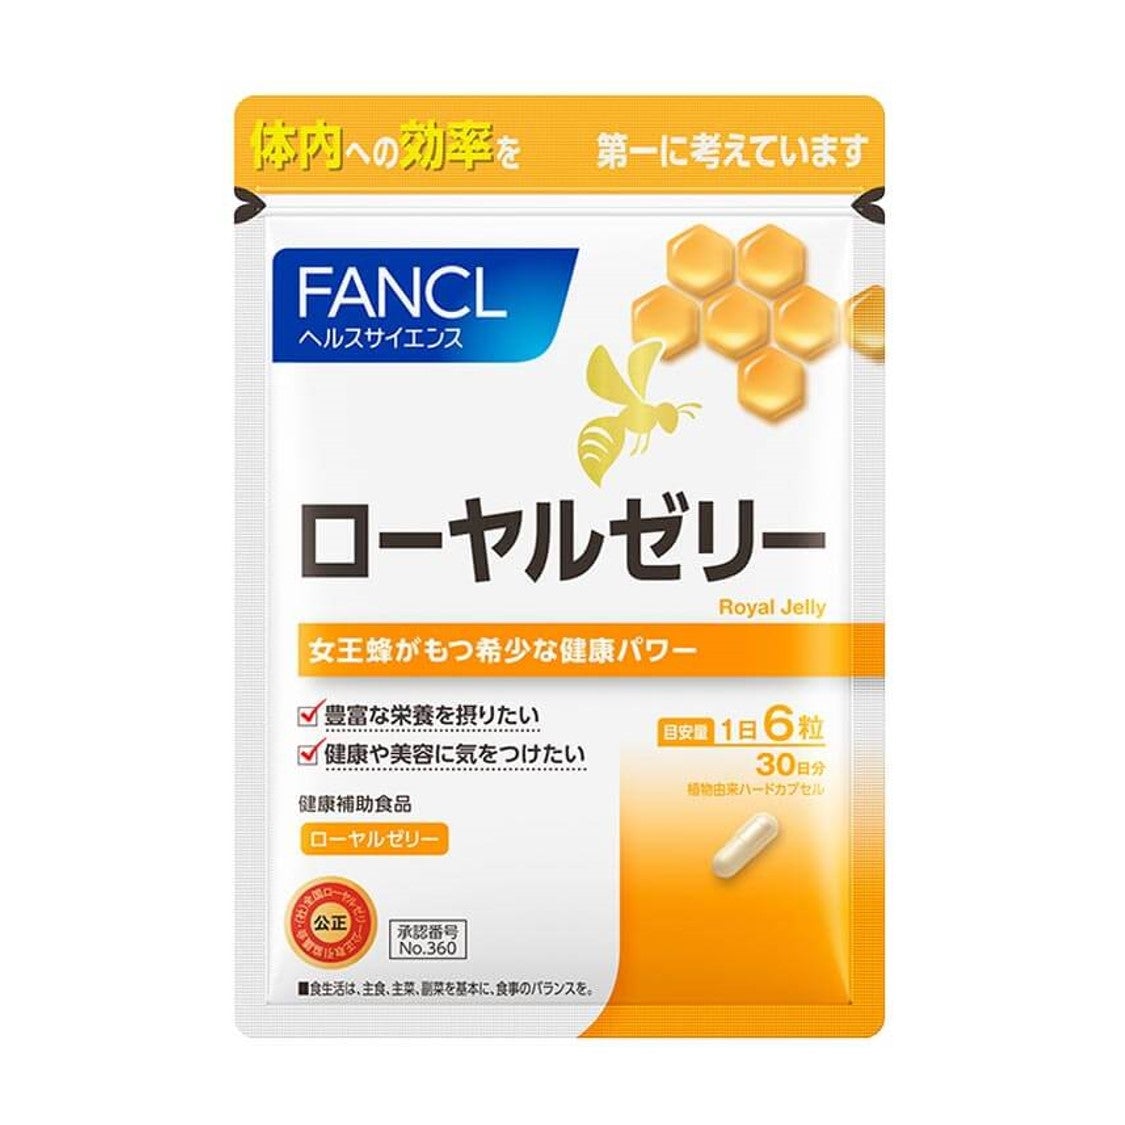 fancl-royal-jelly